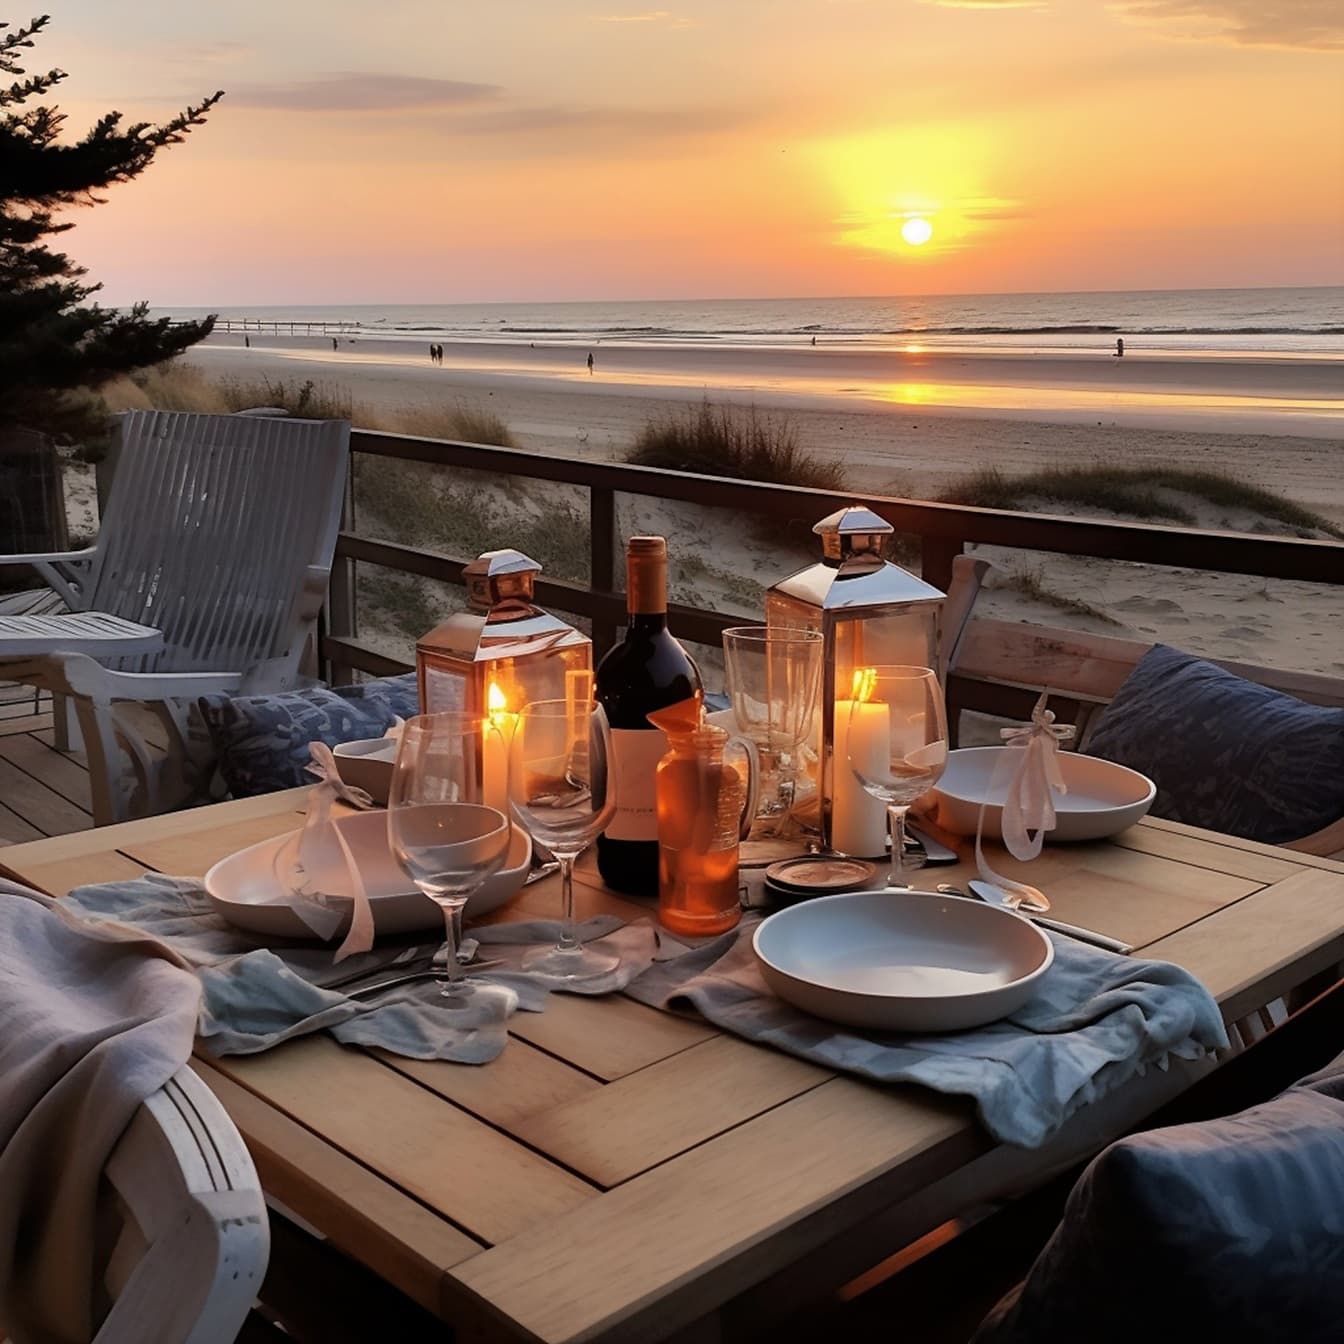 Bàn ăn tối lãng mạn với rượu vang đỏ và nến trong nhà hàng ở bên bờ biển